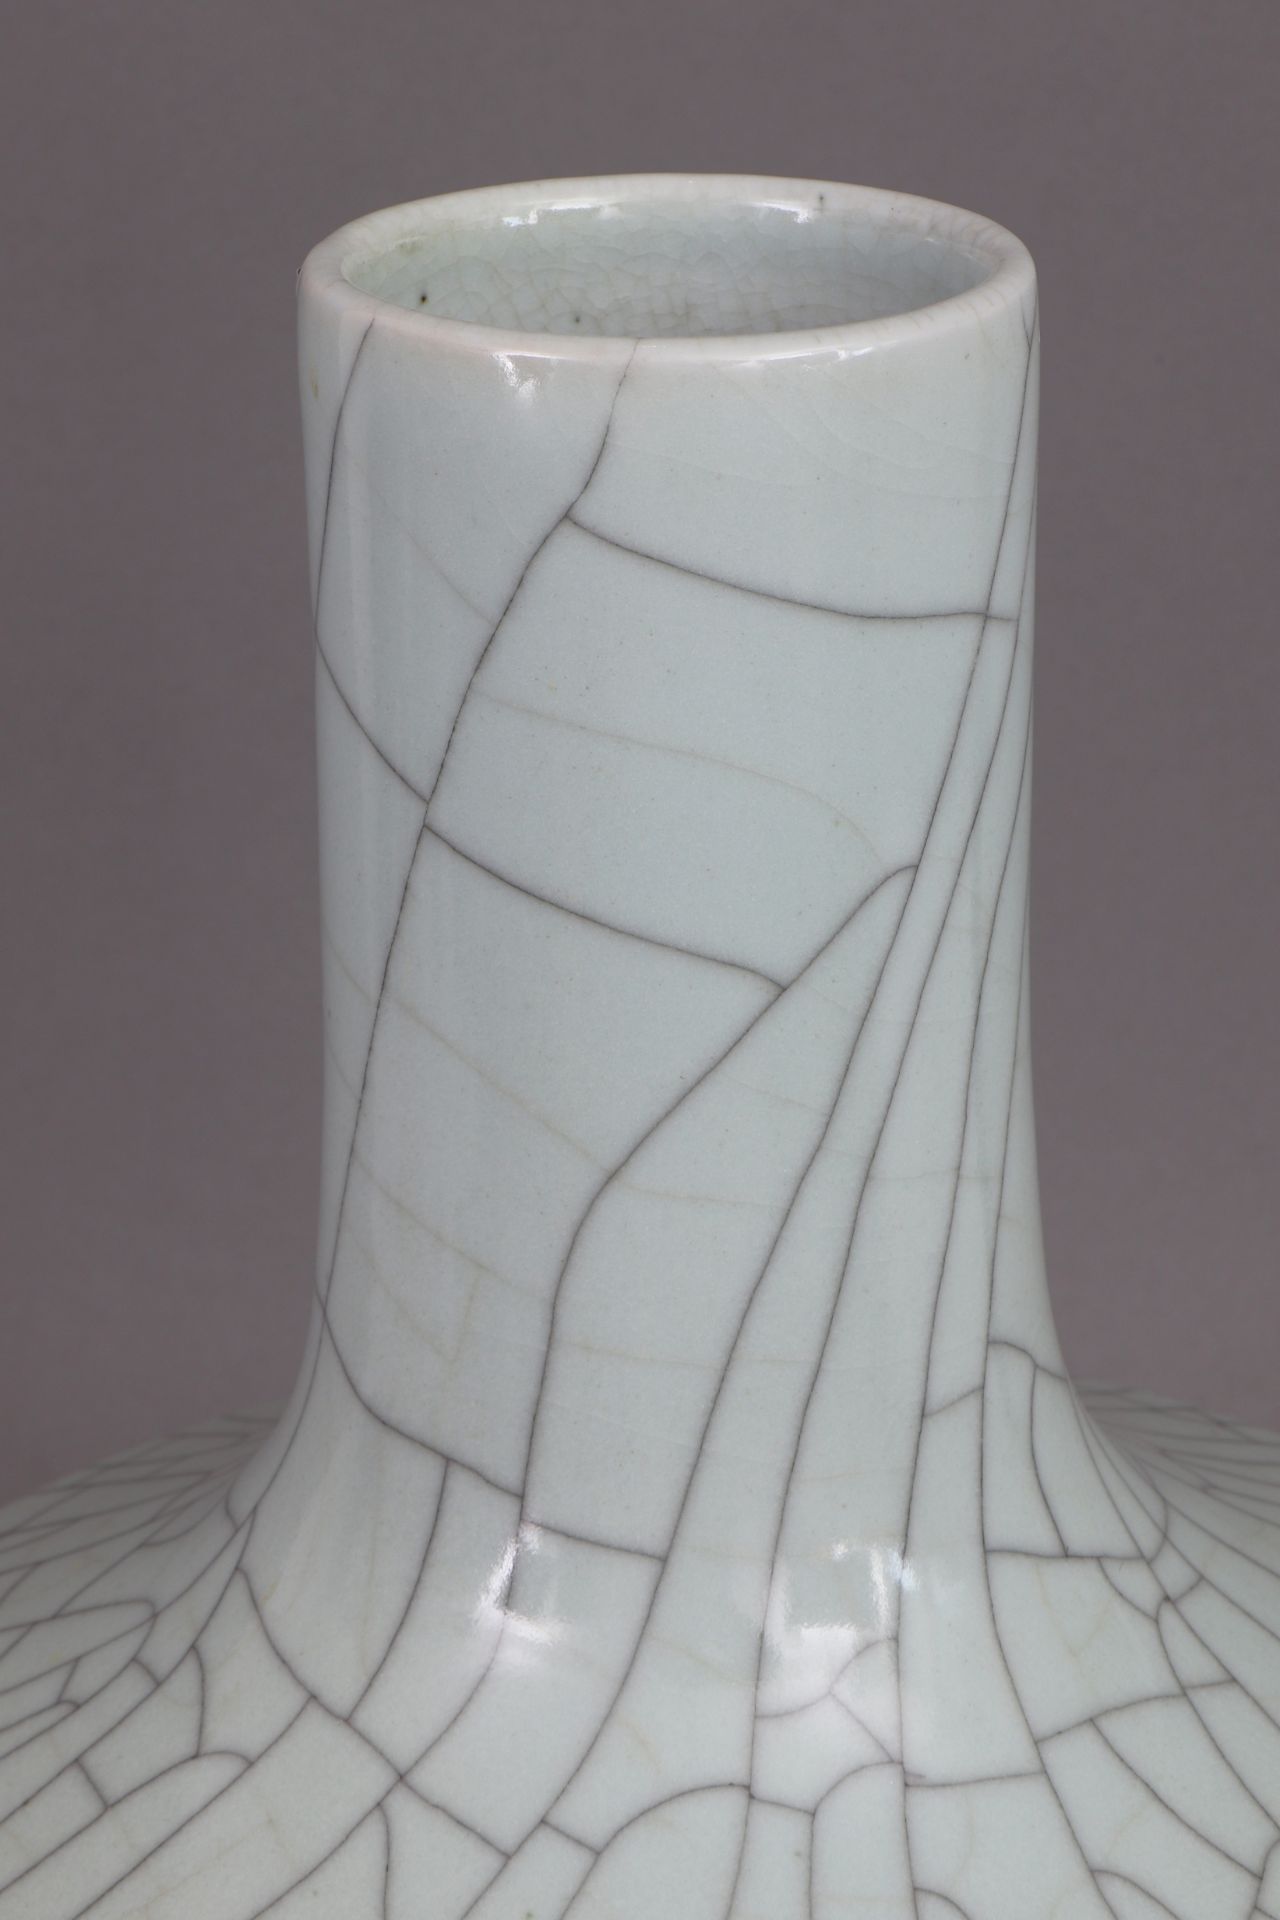 Chinesische Porzellanvase mit Seladonglasur - Image 2 of 3